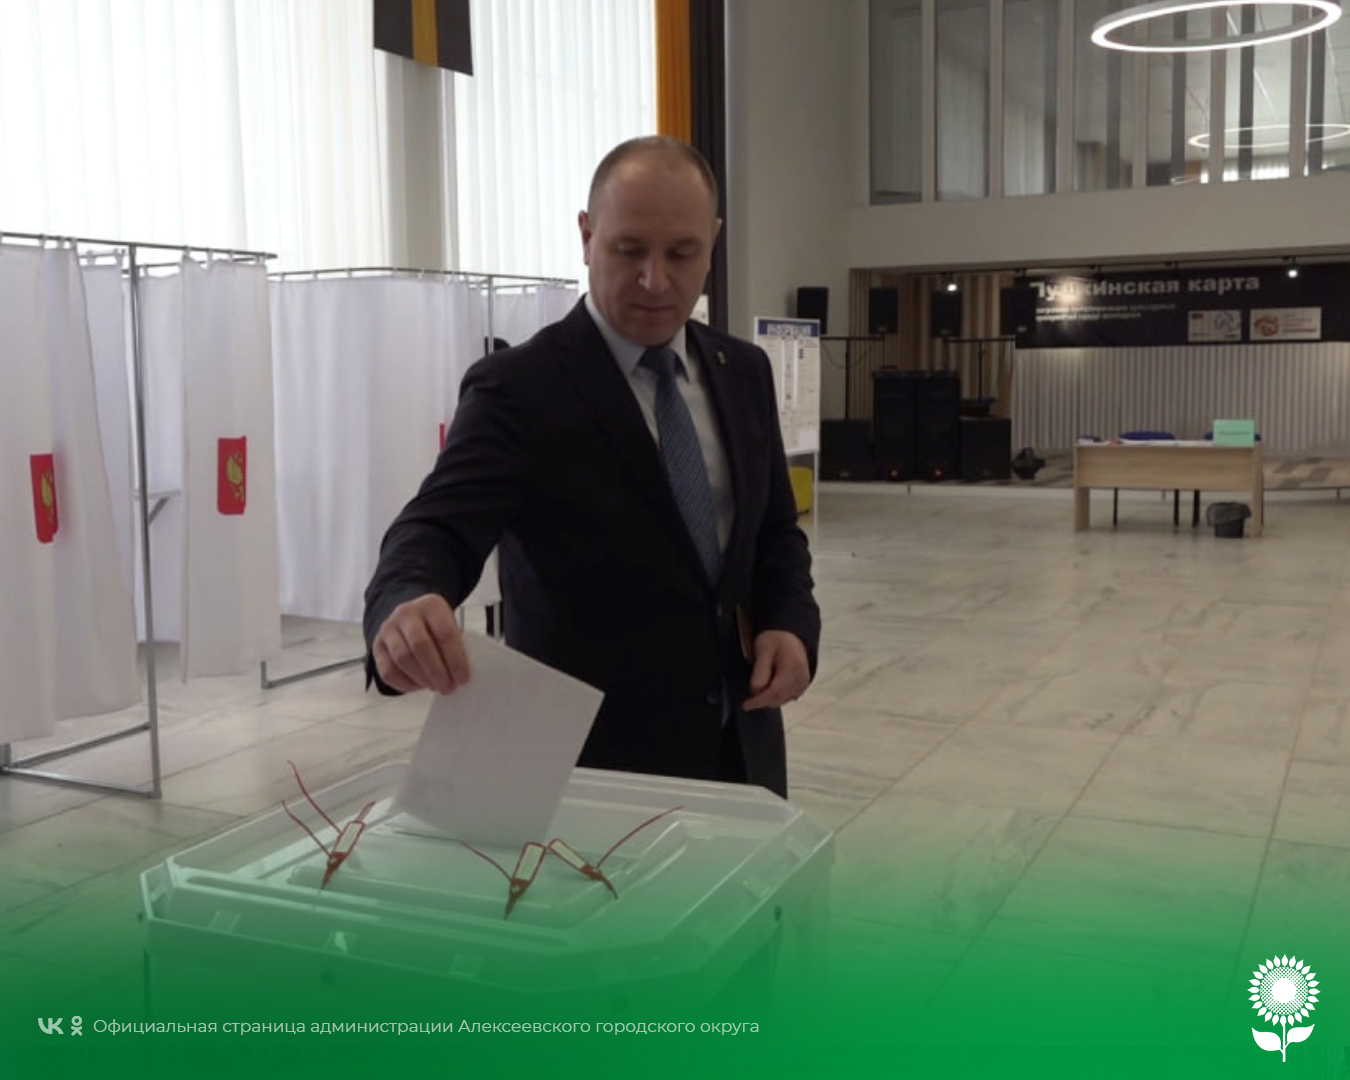 Глава Алексеевского городского округа Алексей Николаевич Калашников  проголосовал на выборах Президента Российской Федерации.